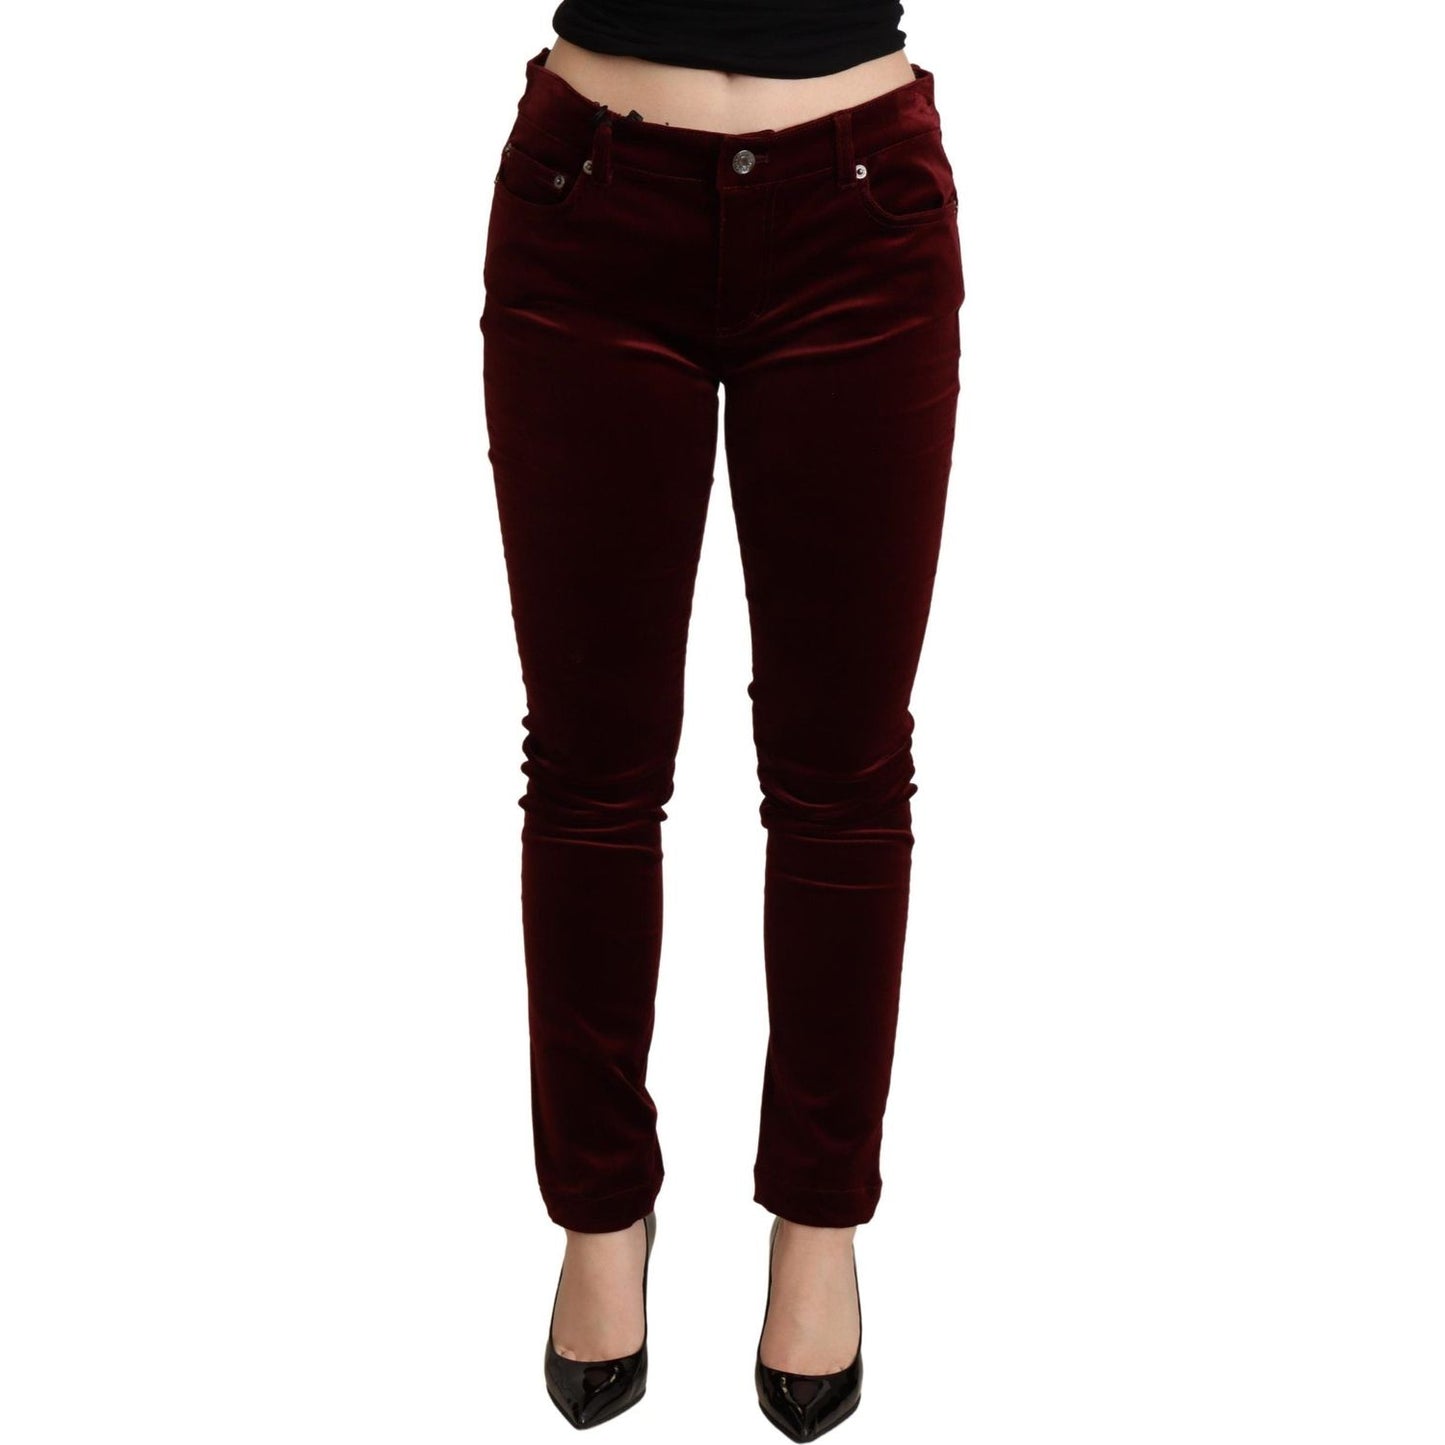 Dolce & Gabbana Exquisite Bordeaux Red Skinny Pants bordeaux-red-velvet-skinny-trouser